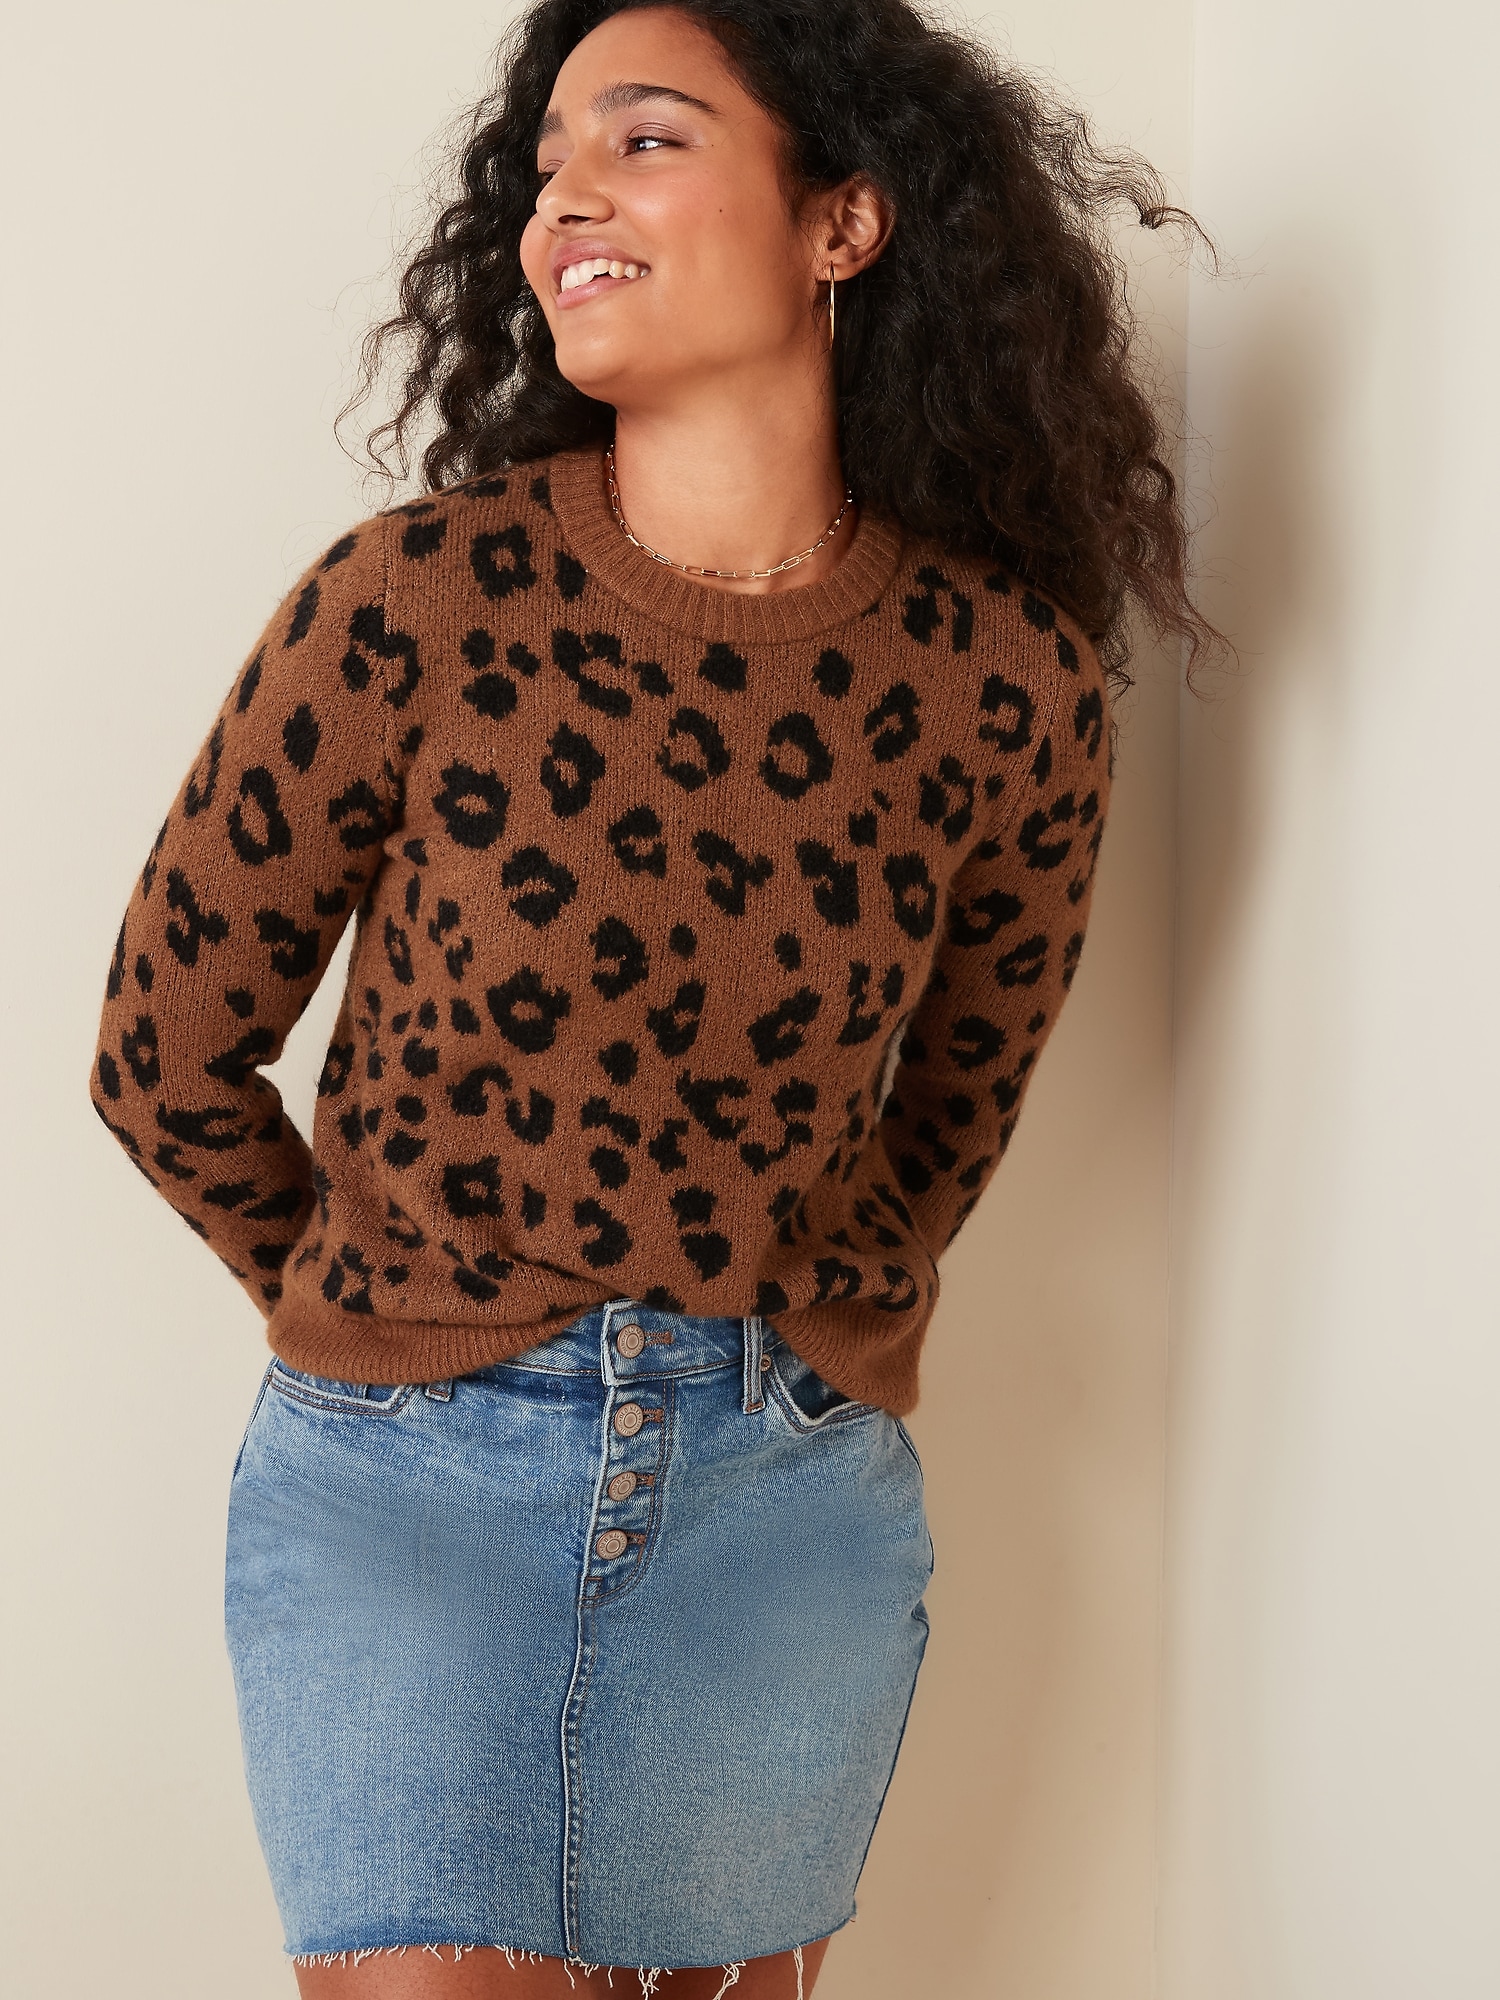 Buy > leopard print sweater women's > in stock